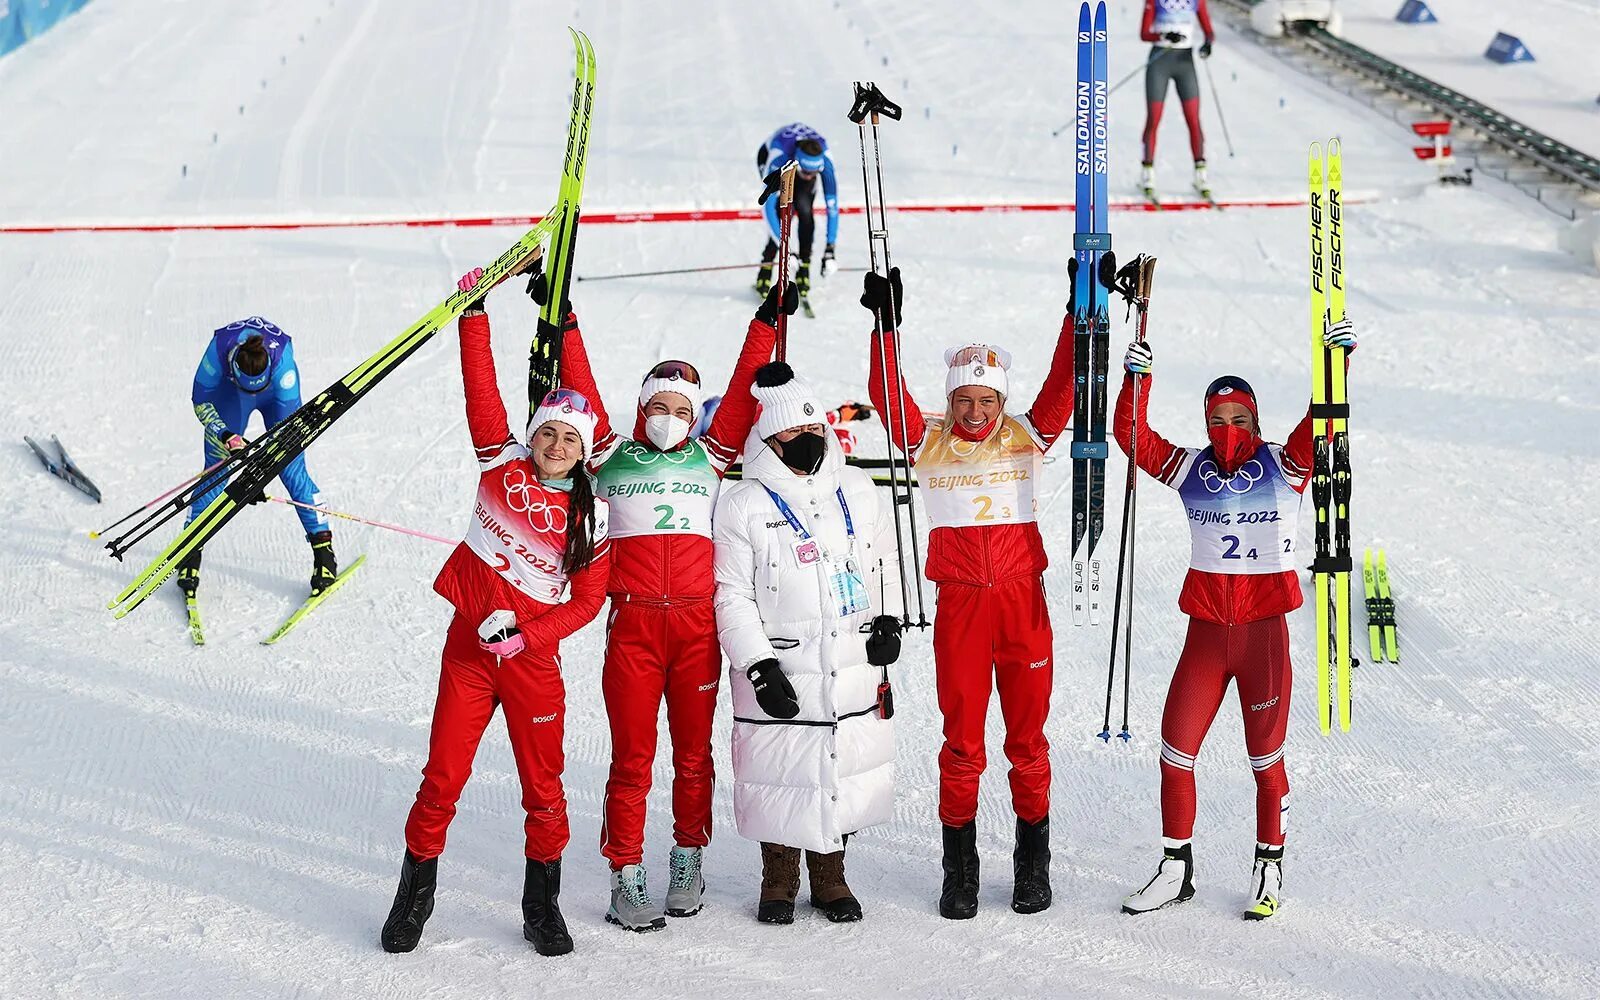 Впереди нас ехали спортсмены. Лыжницы России на Олимпиаде 2022.